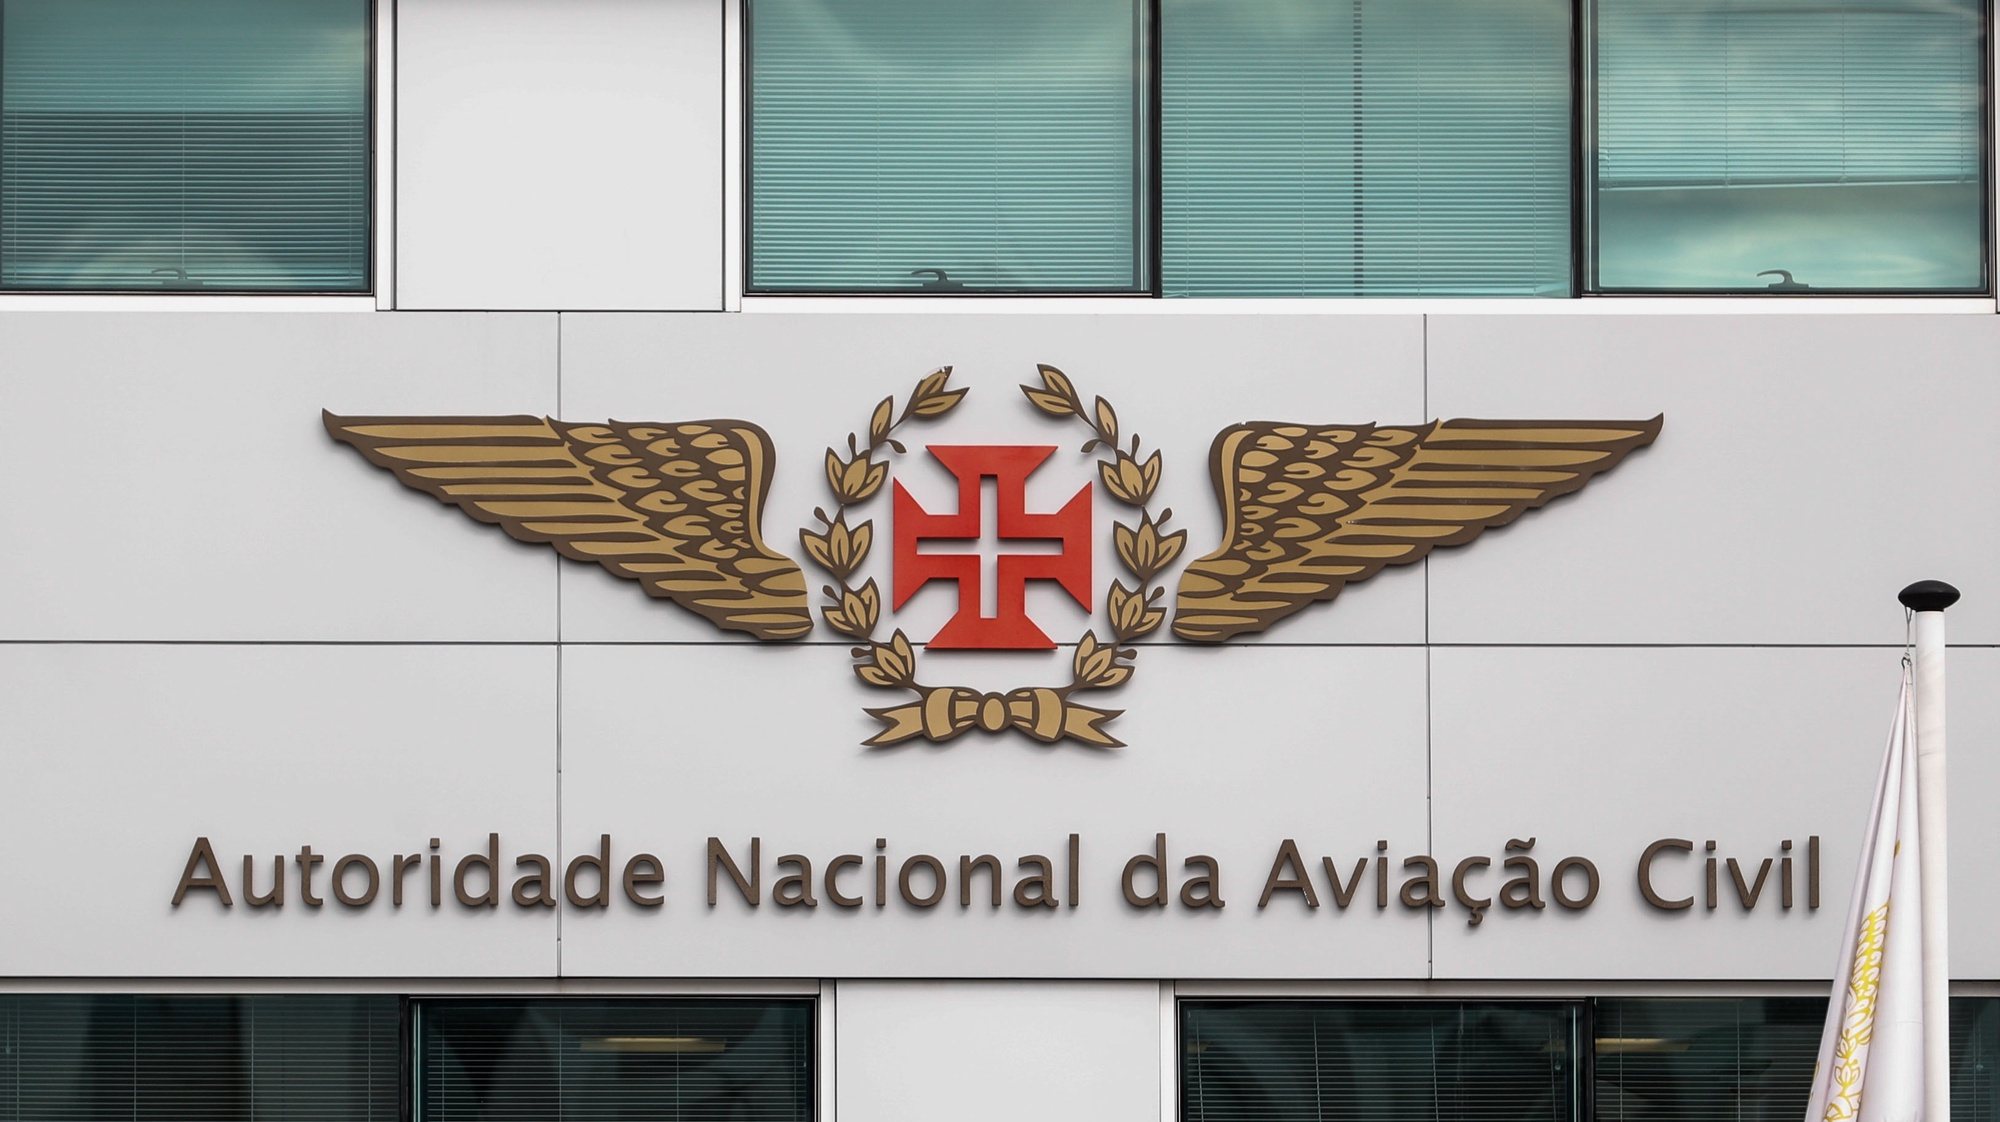 Edificio da Autoridade Nacional da Aviação Civil (ANAC), no aeroporto de Lisboa, 20 de fevereiro de 2020. ANTÓNIO COTRIM/LUSA